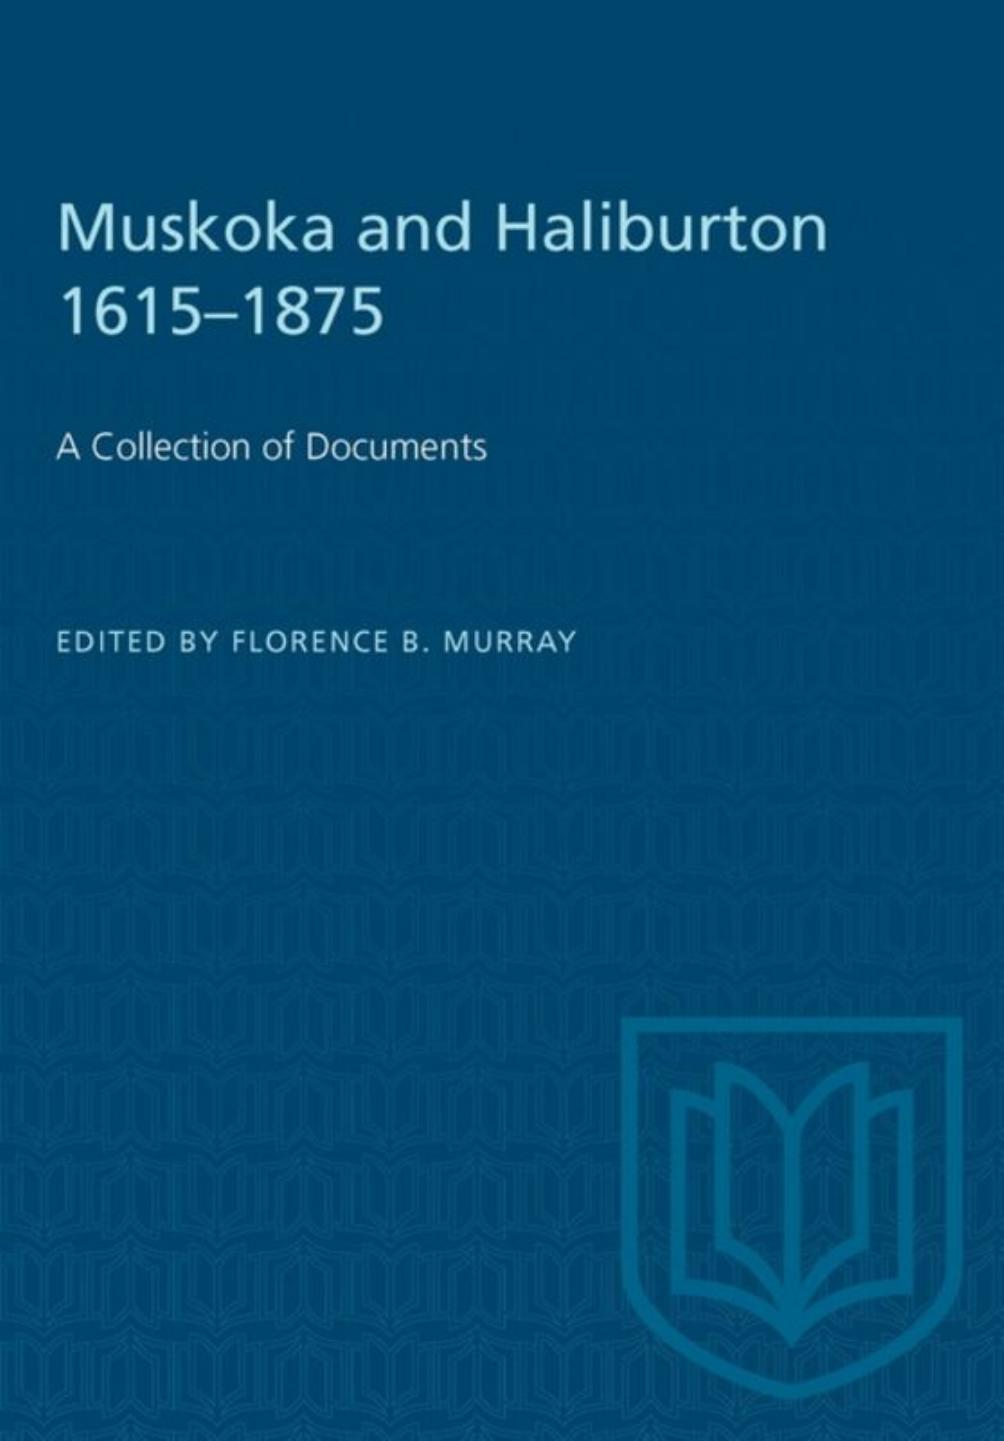 Muskoka and Haliburton 1615â1875: A Collection of Documents by Florence B. Murray